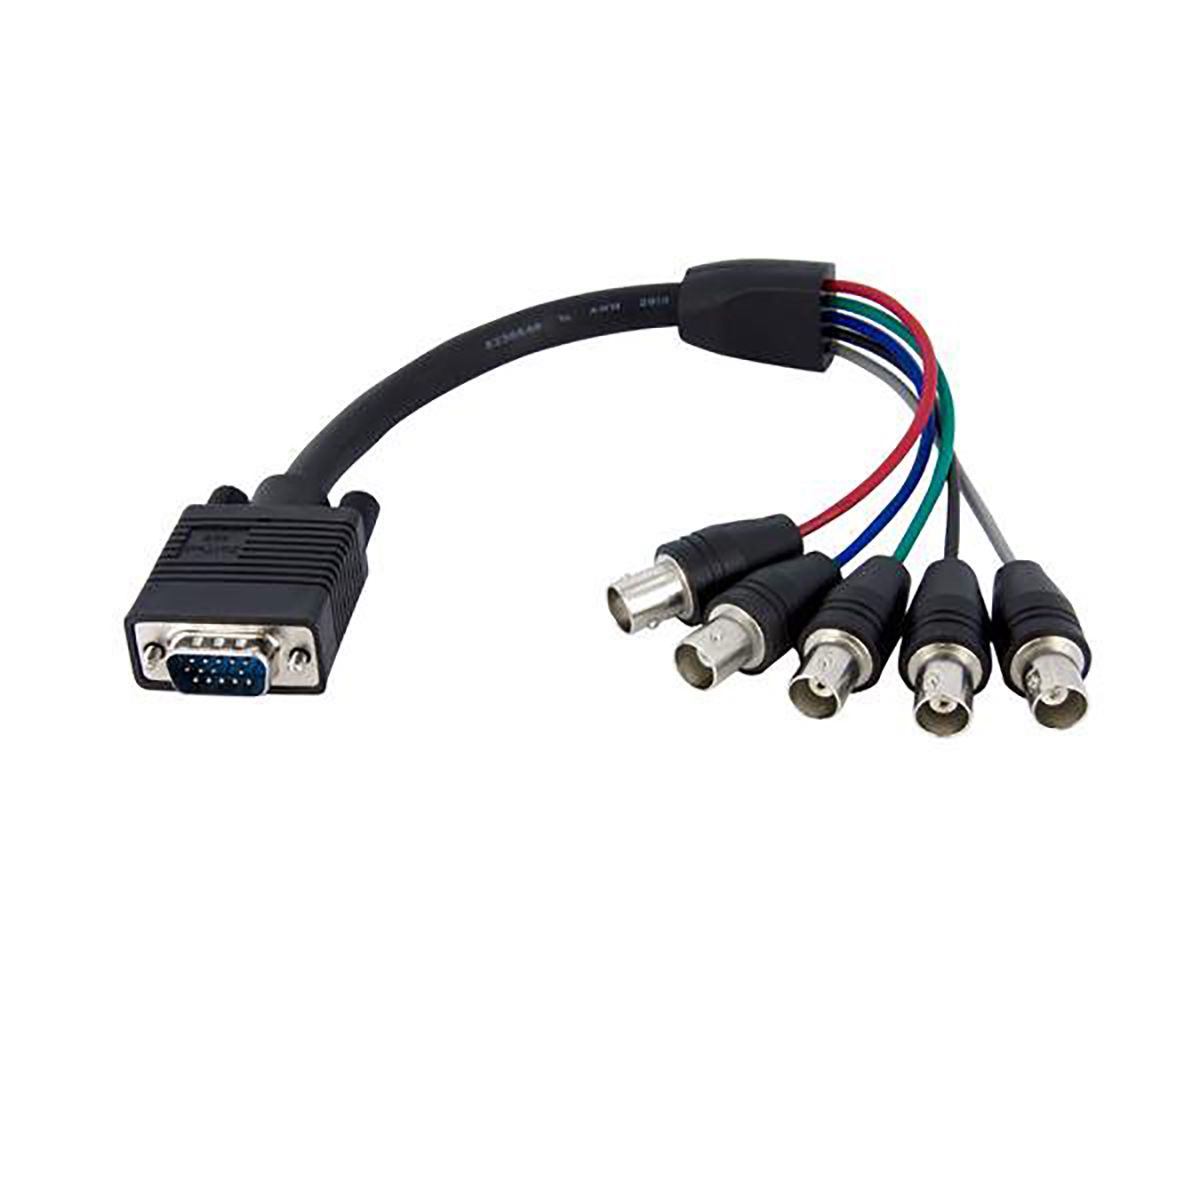 Cable VGA StarTech.com de color Negro, con. A: VGA macho, con. B: BNC hembra, long. 300mm